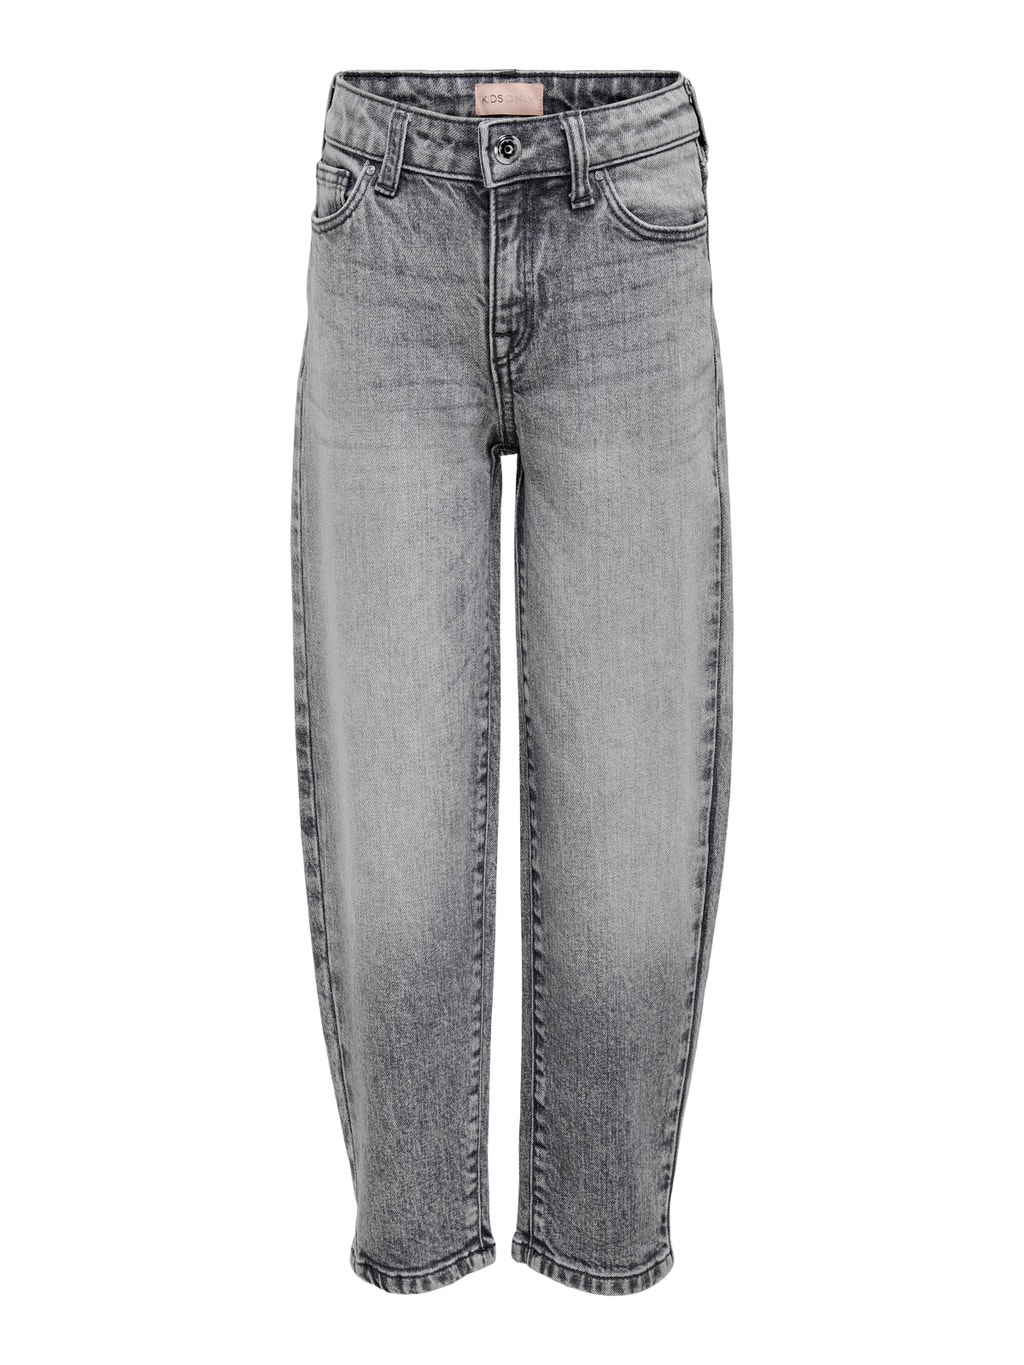 pindas Uitvoerder onregelmatig KONLucca life mw ankle Straight fit jeans met 50% korting! | ONLY®